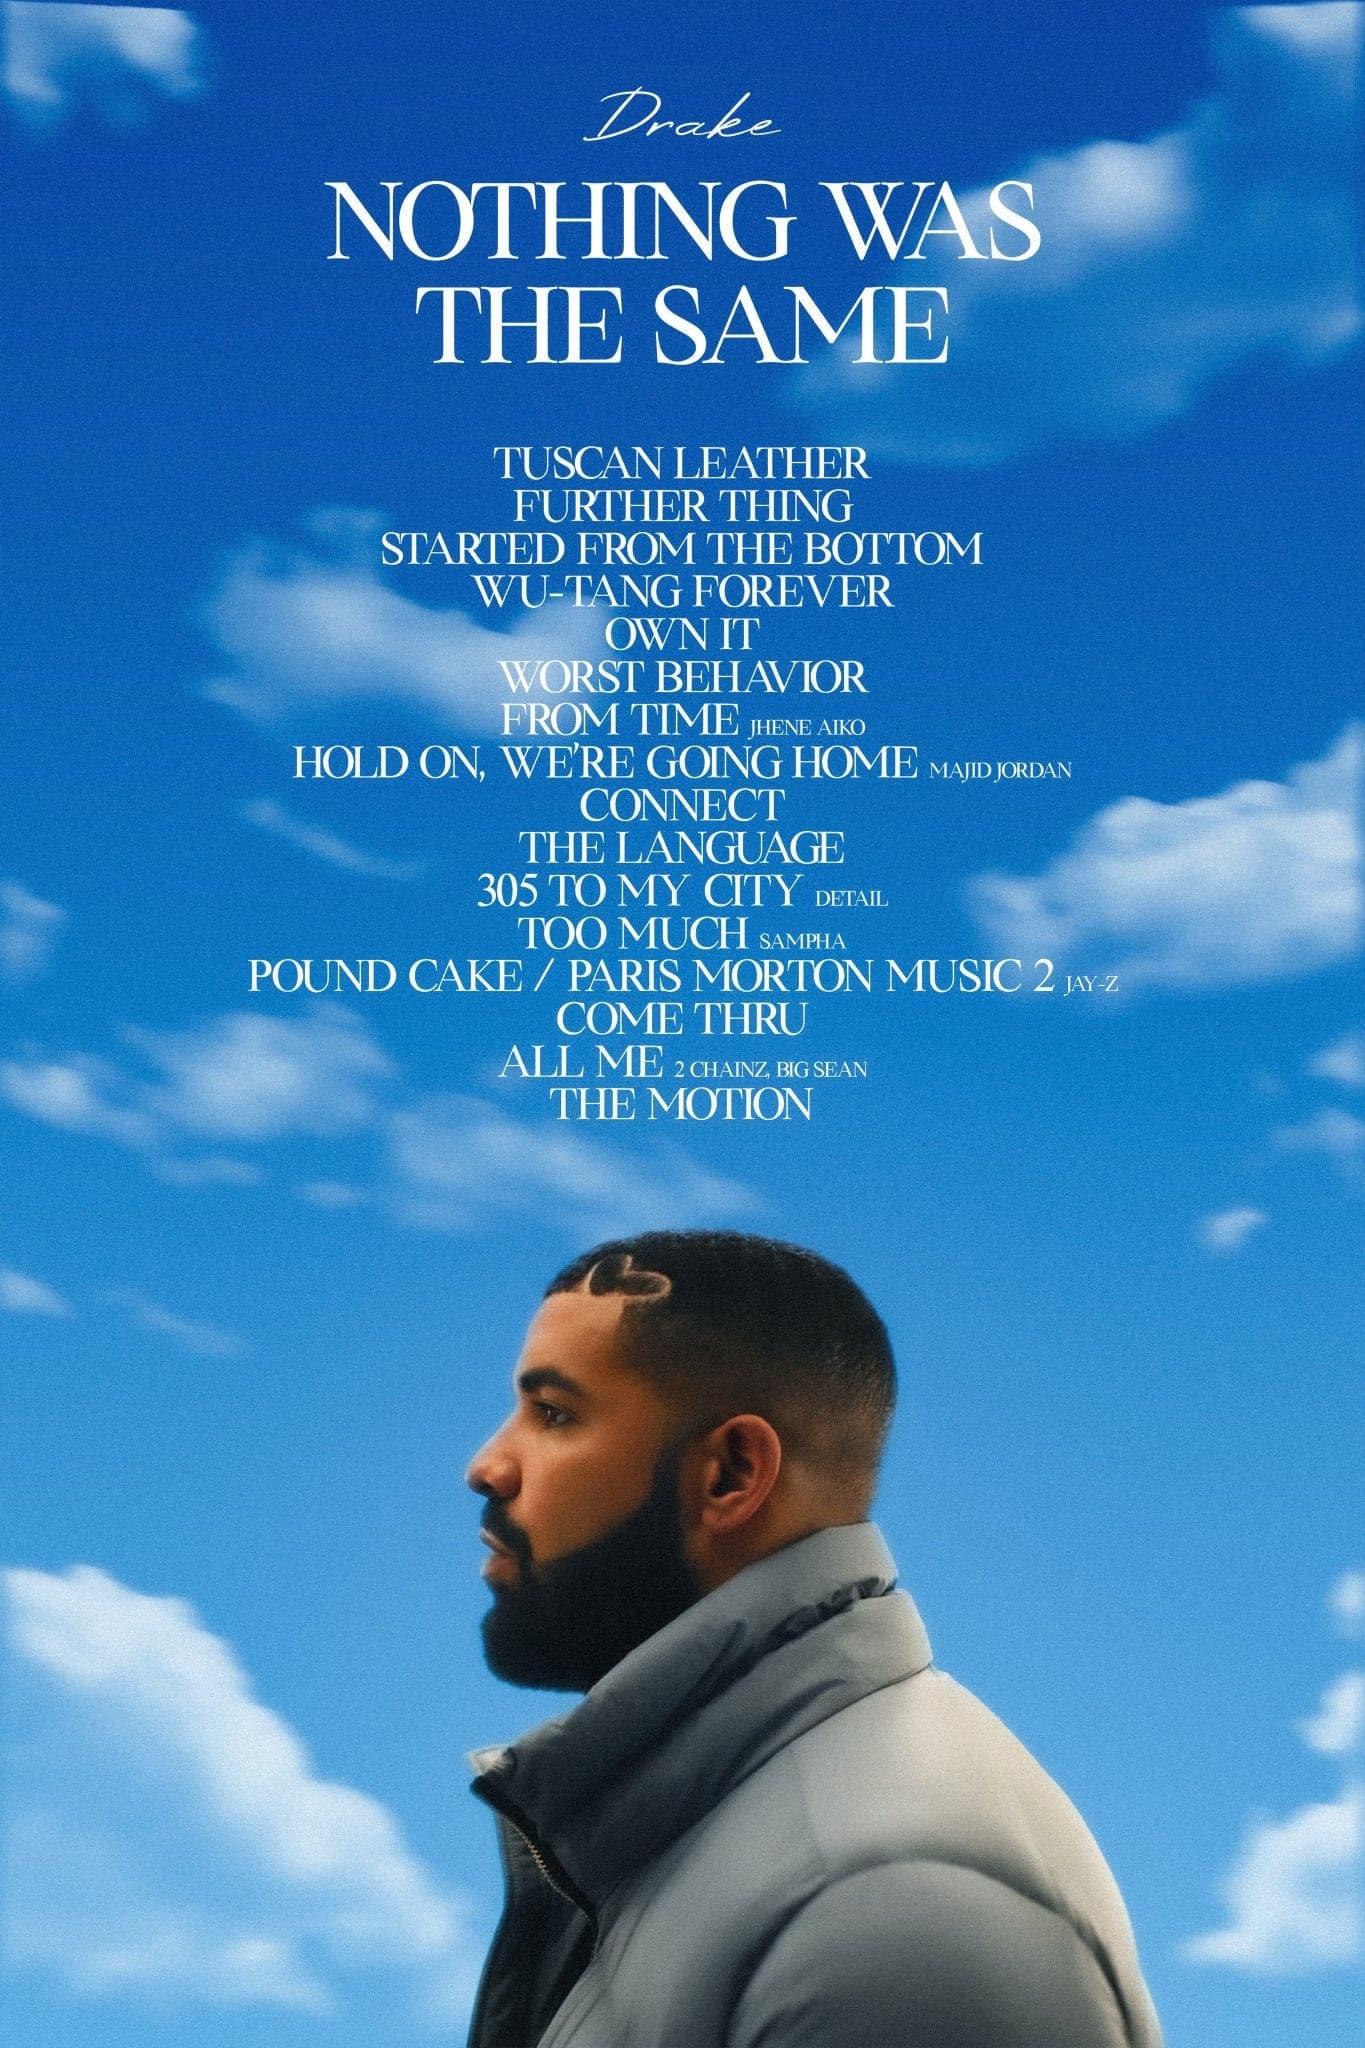 Drake – The Language Lyrics